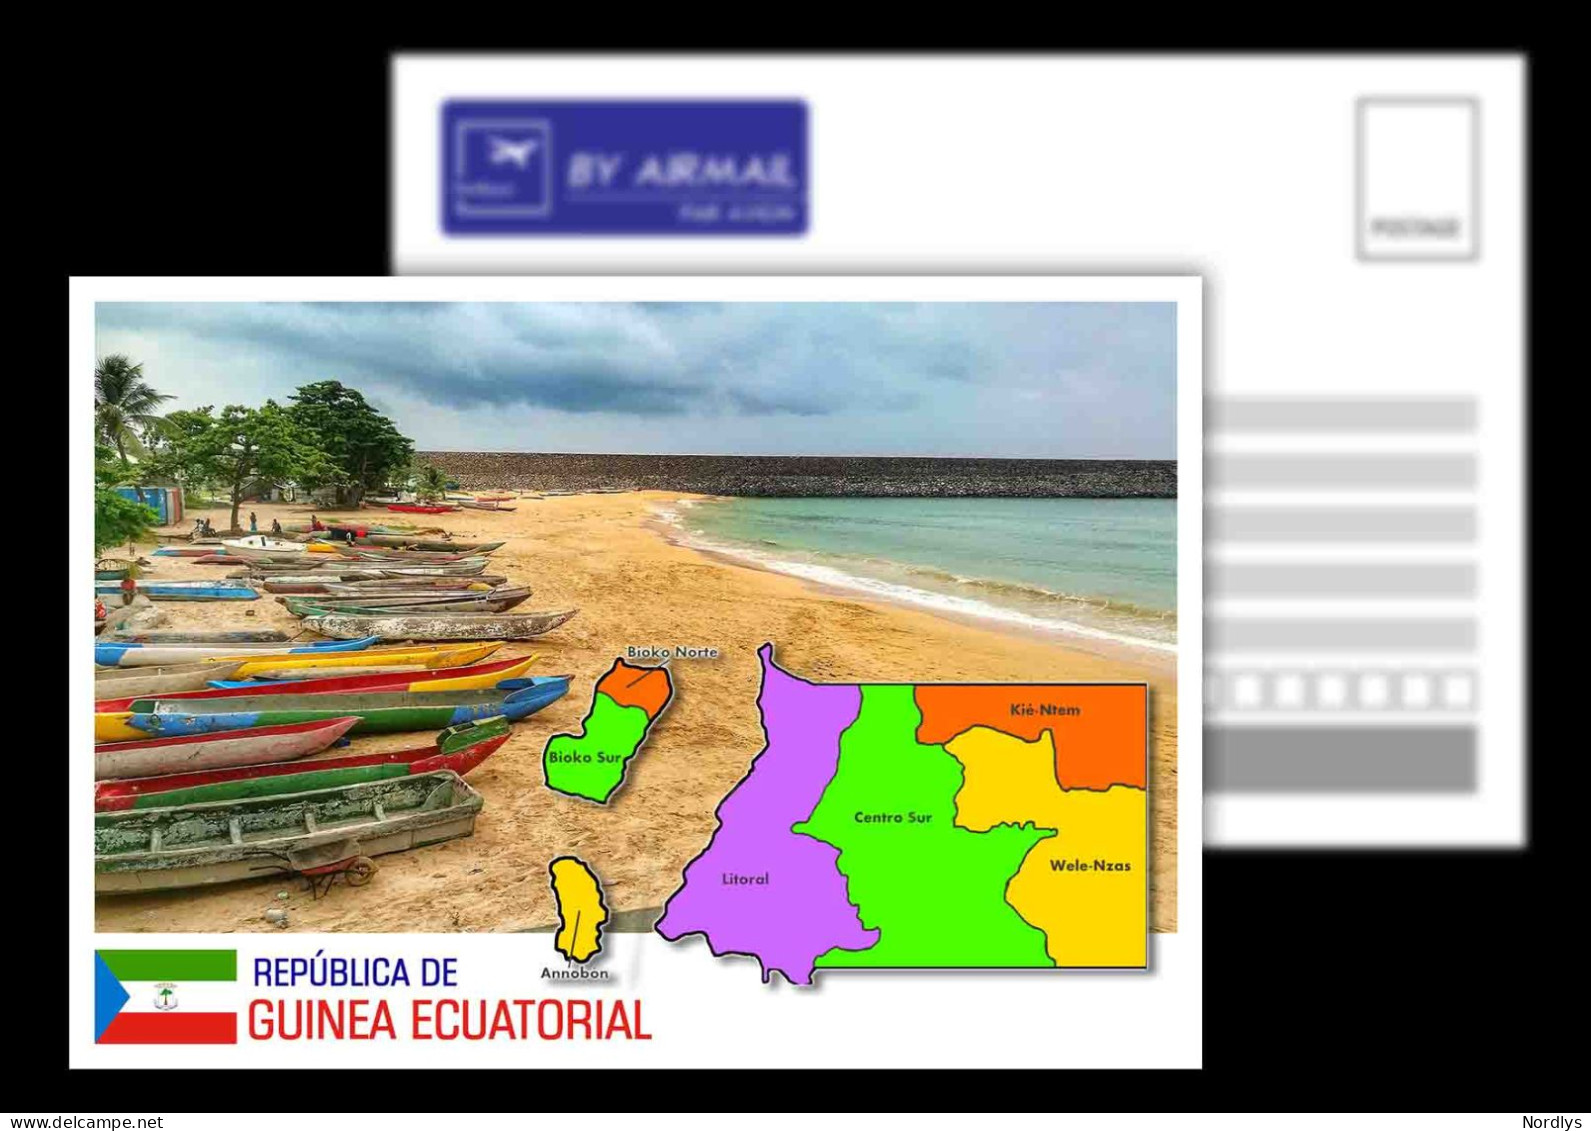 Equatorial Guinea / Postcard / View Card/ Map Card - Guinea Equatoriale